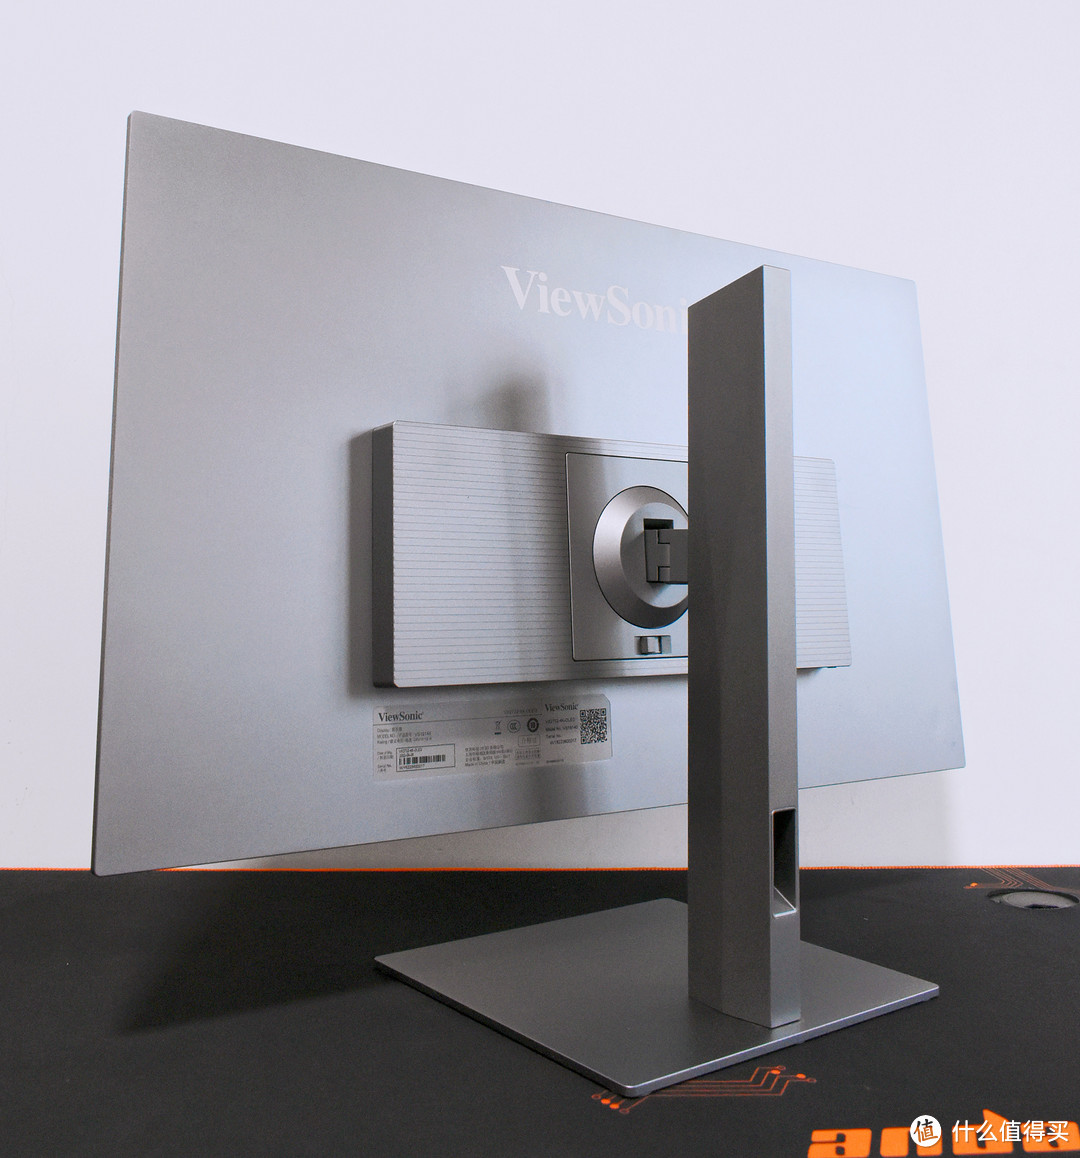 优派VX2722-4K-OLED显示器：更薄更清晰，这色域色准爱了